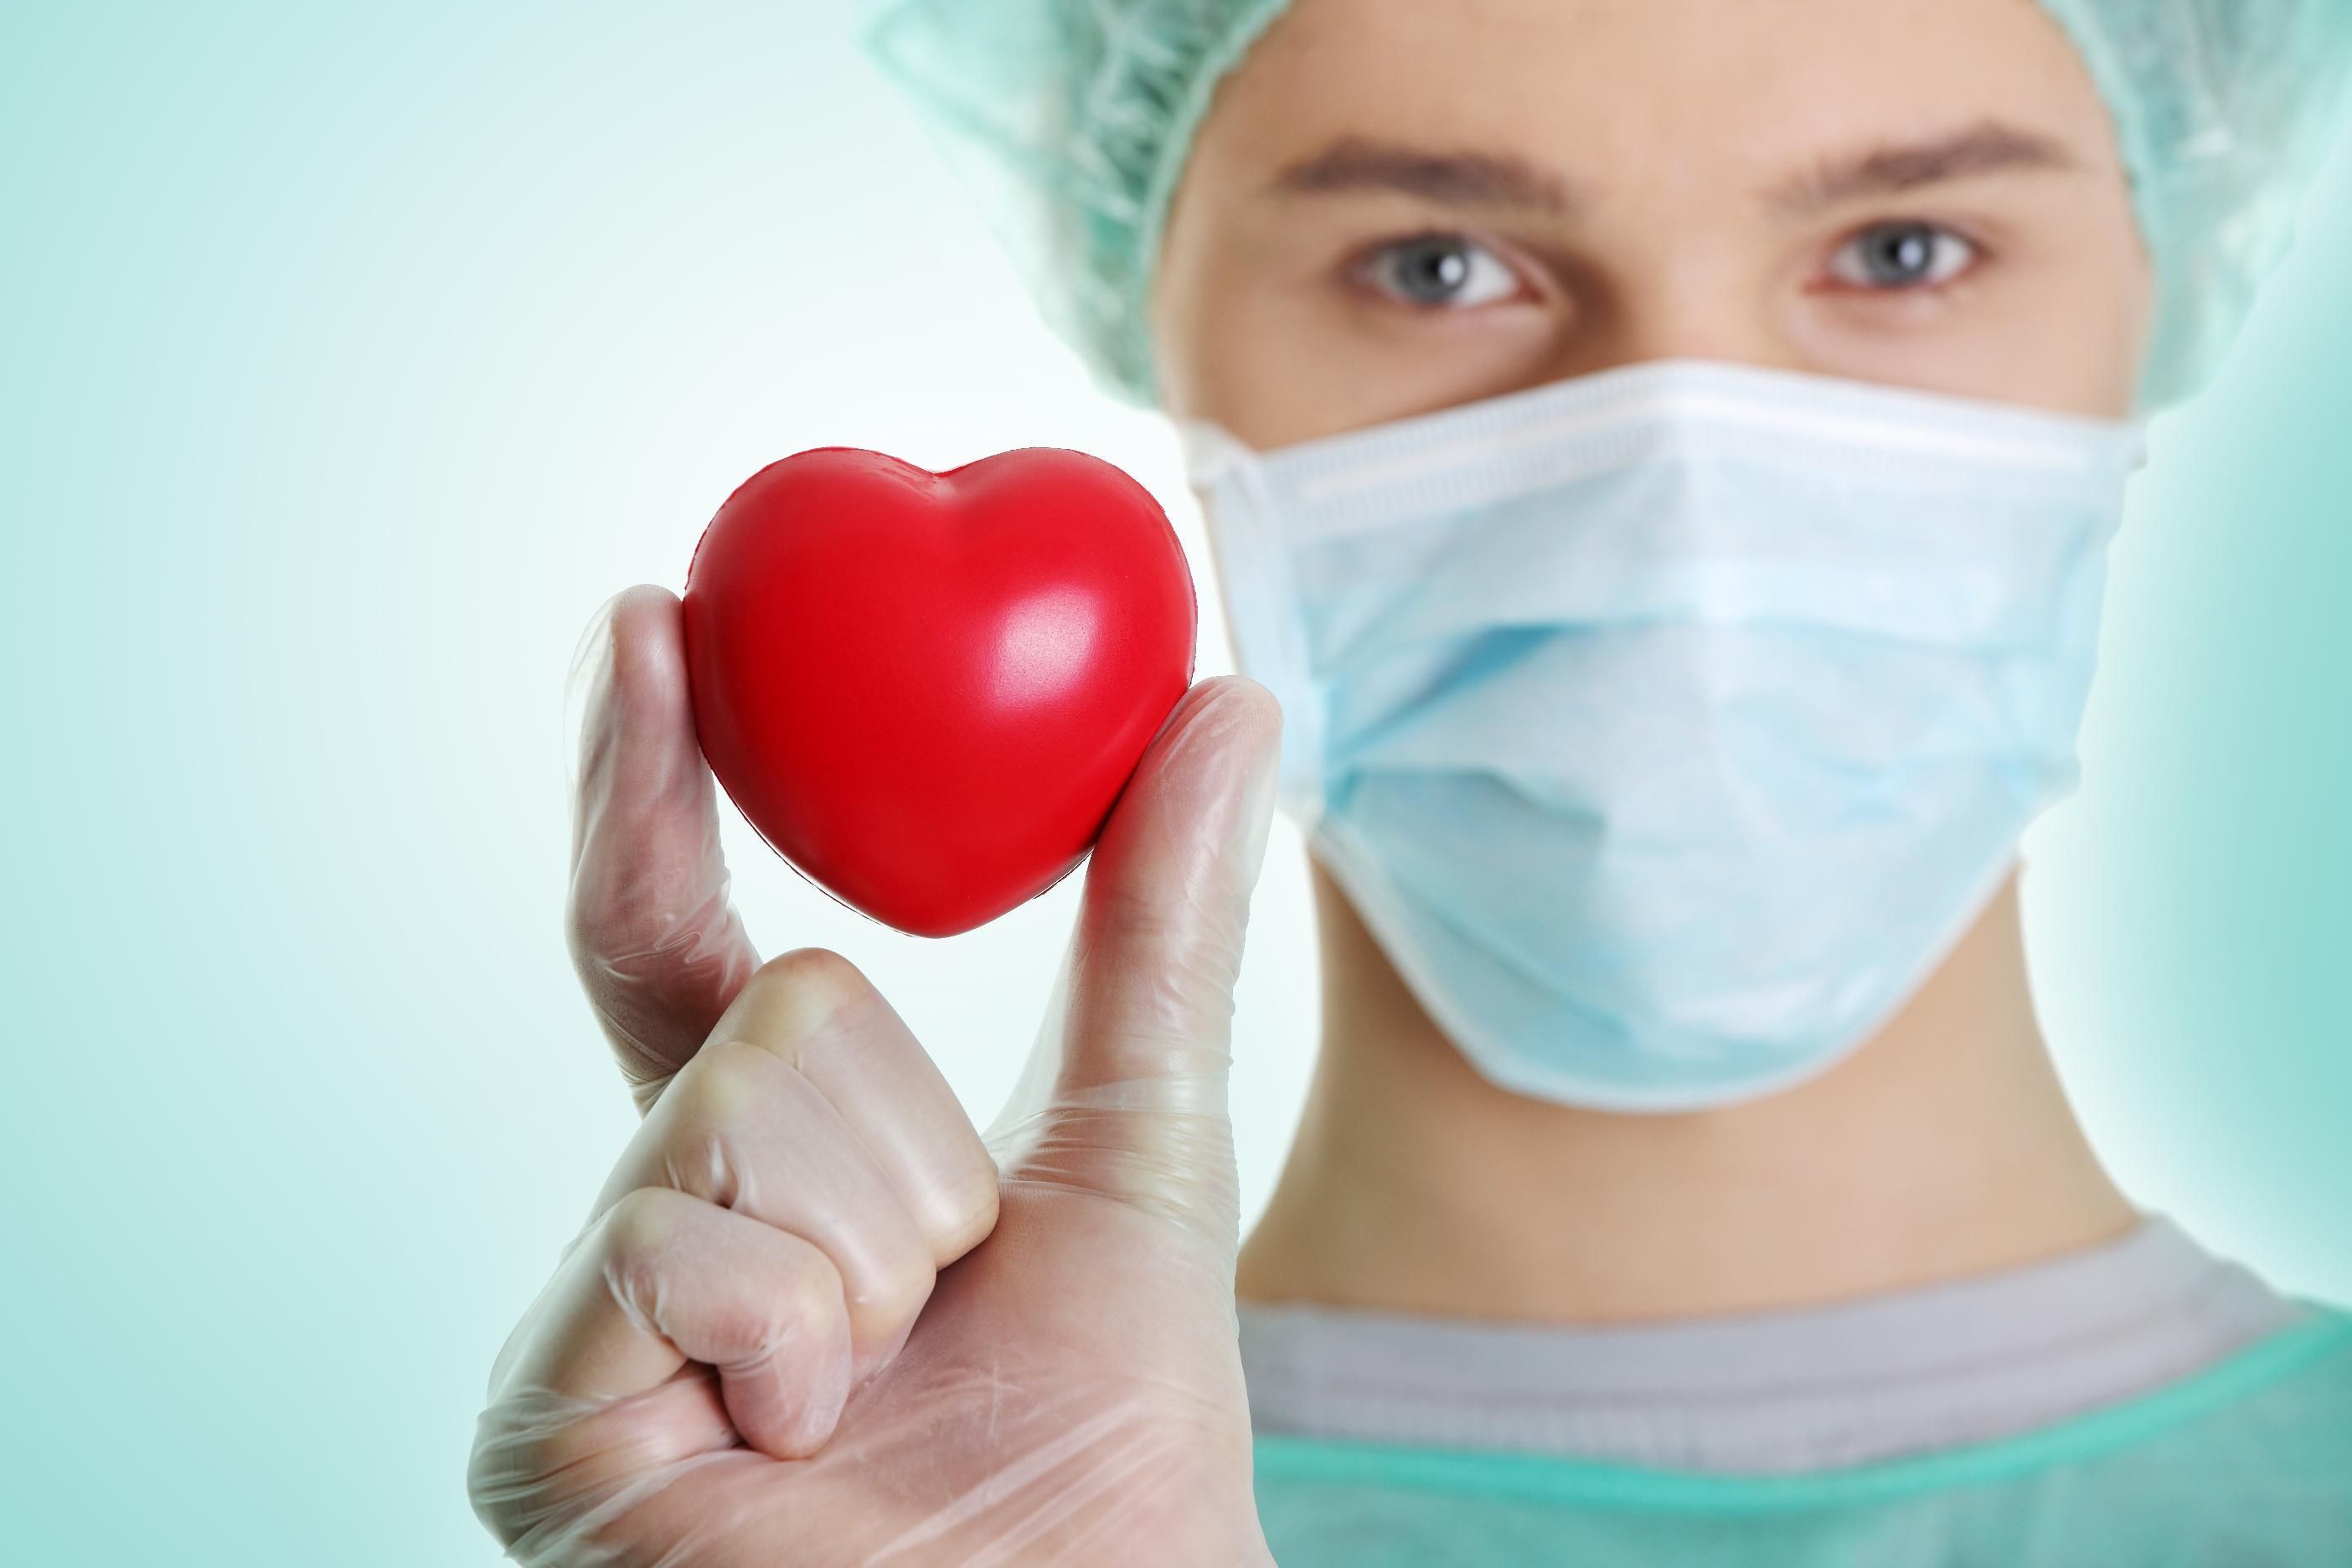 Операция на сердце: чего боятся пациенты, и что из страхов – правда, а что – миф - Здоровье 24